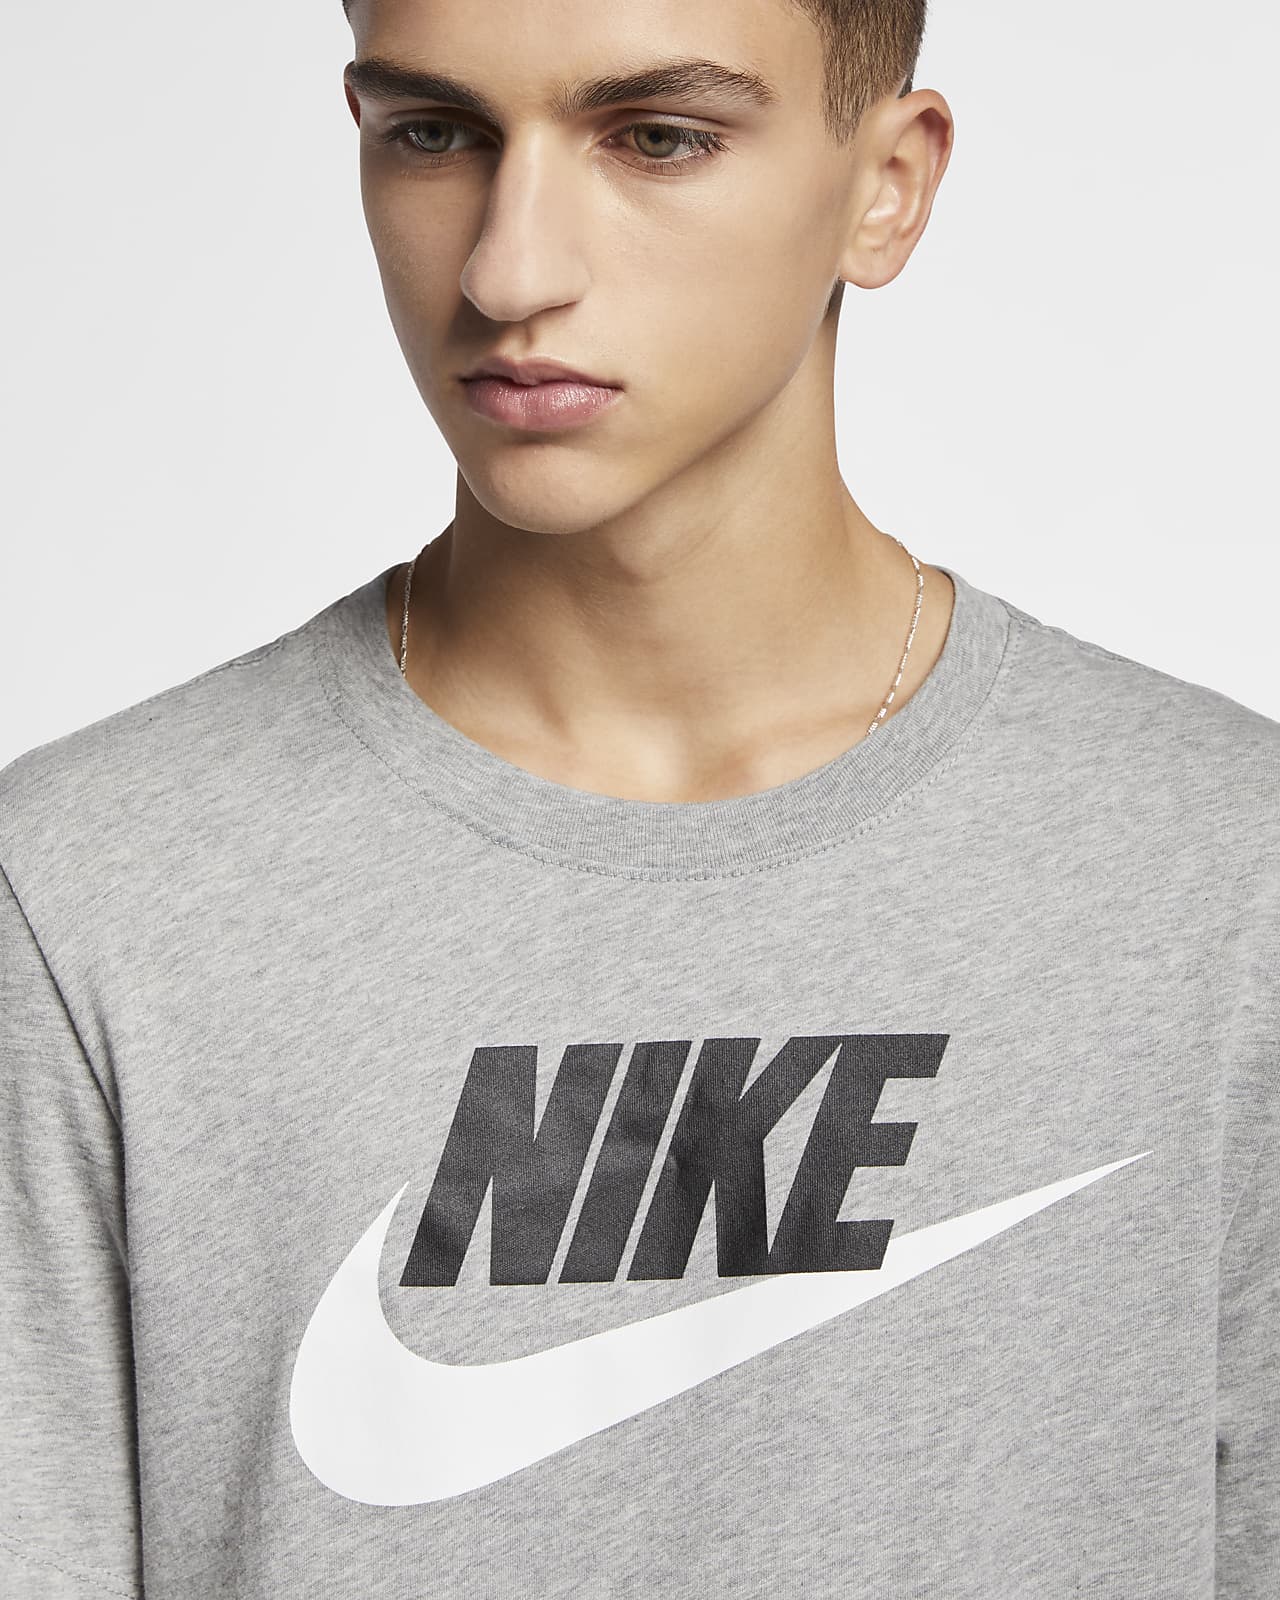 Nike Sportswear Men\'s T-Shirt. LU Nike